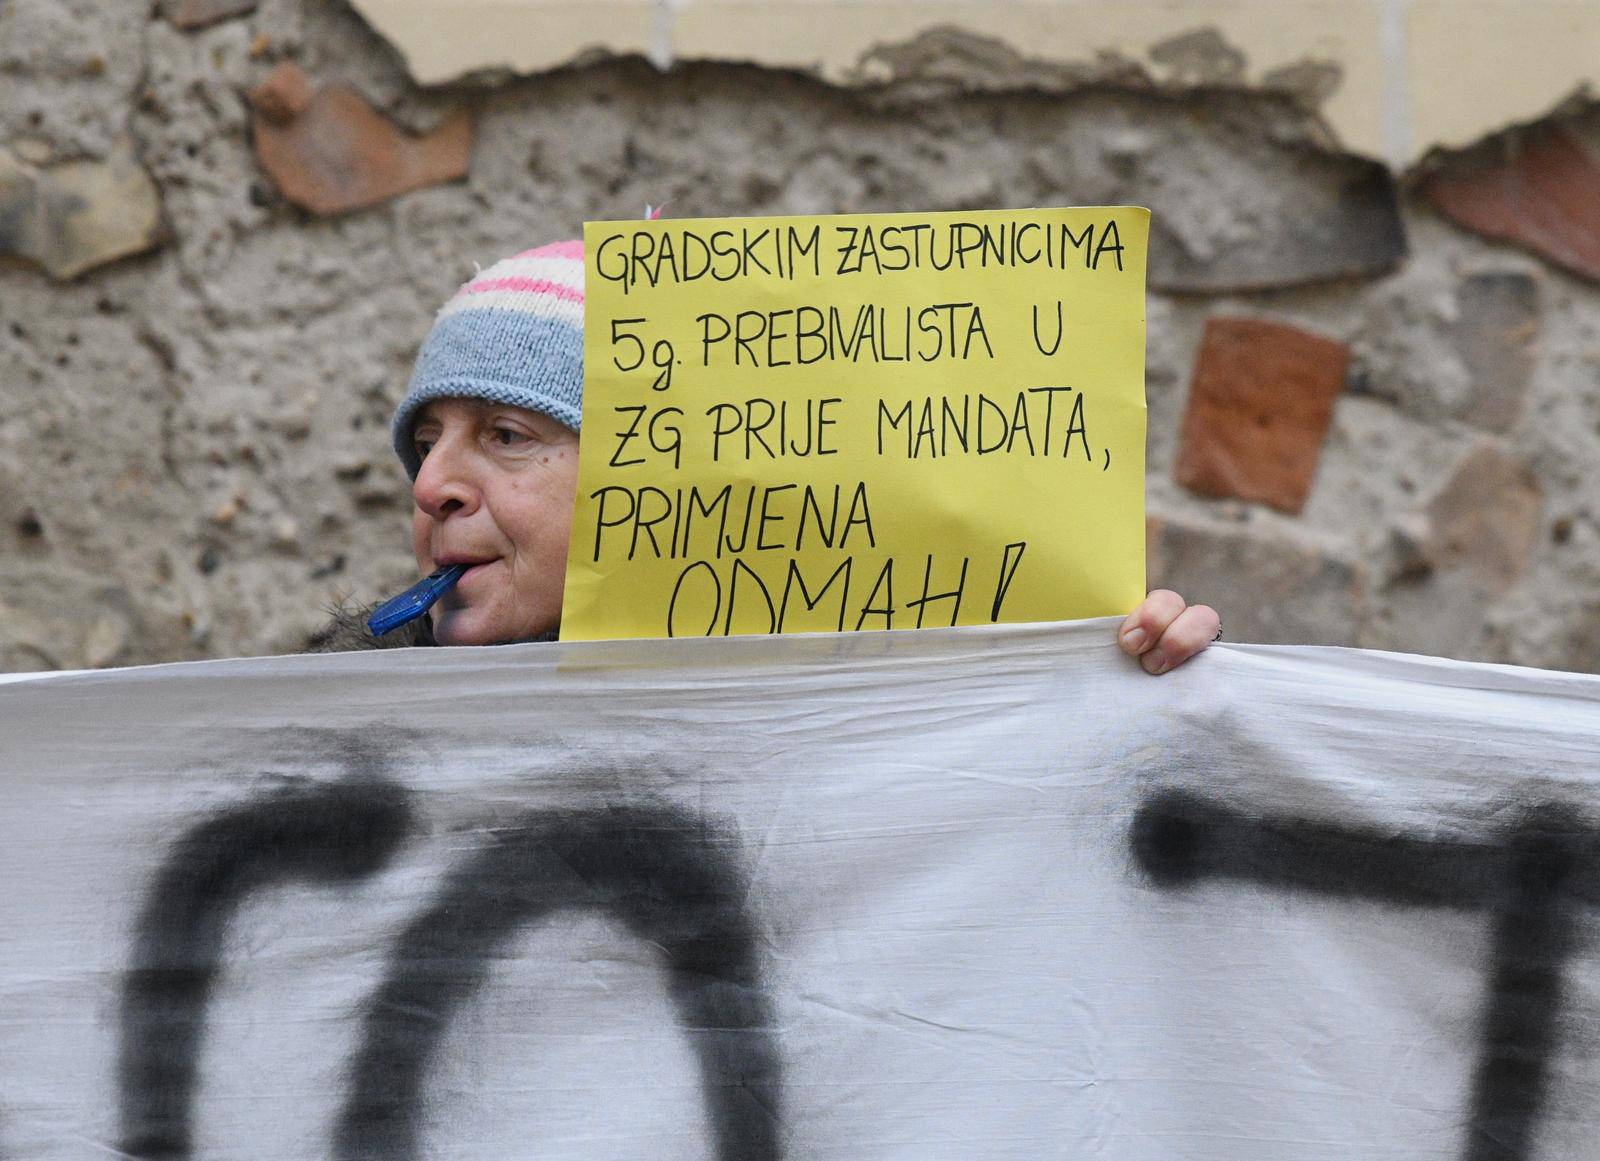 Zagreb: Prosvjed roditelja odgajatelja ispred Gradske skupštine zbog najave modificiranja te mjere